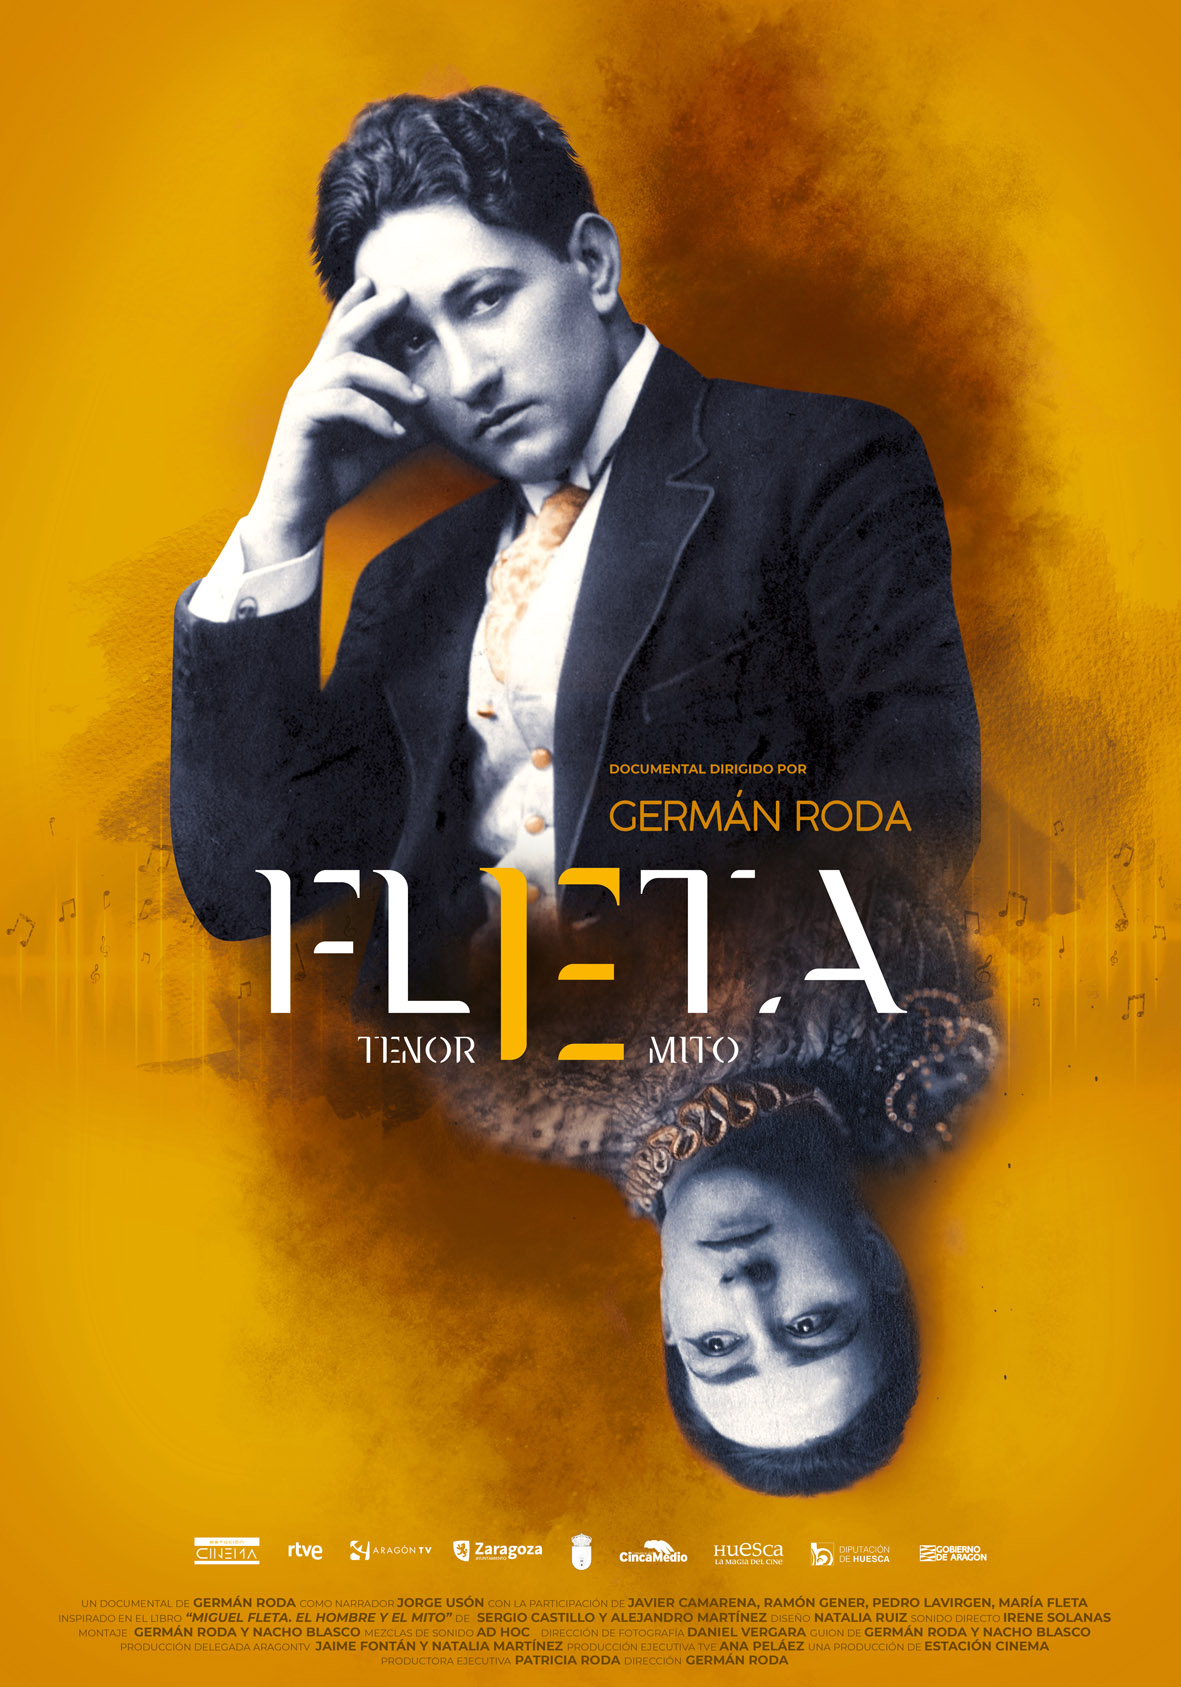 Cartel promocional del documental "Fleta, tenor, mito" que será emitido por La 2 de RTVE